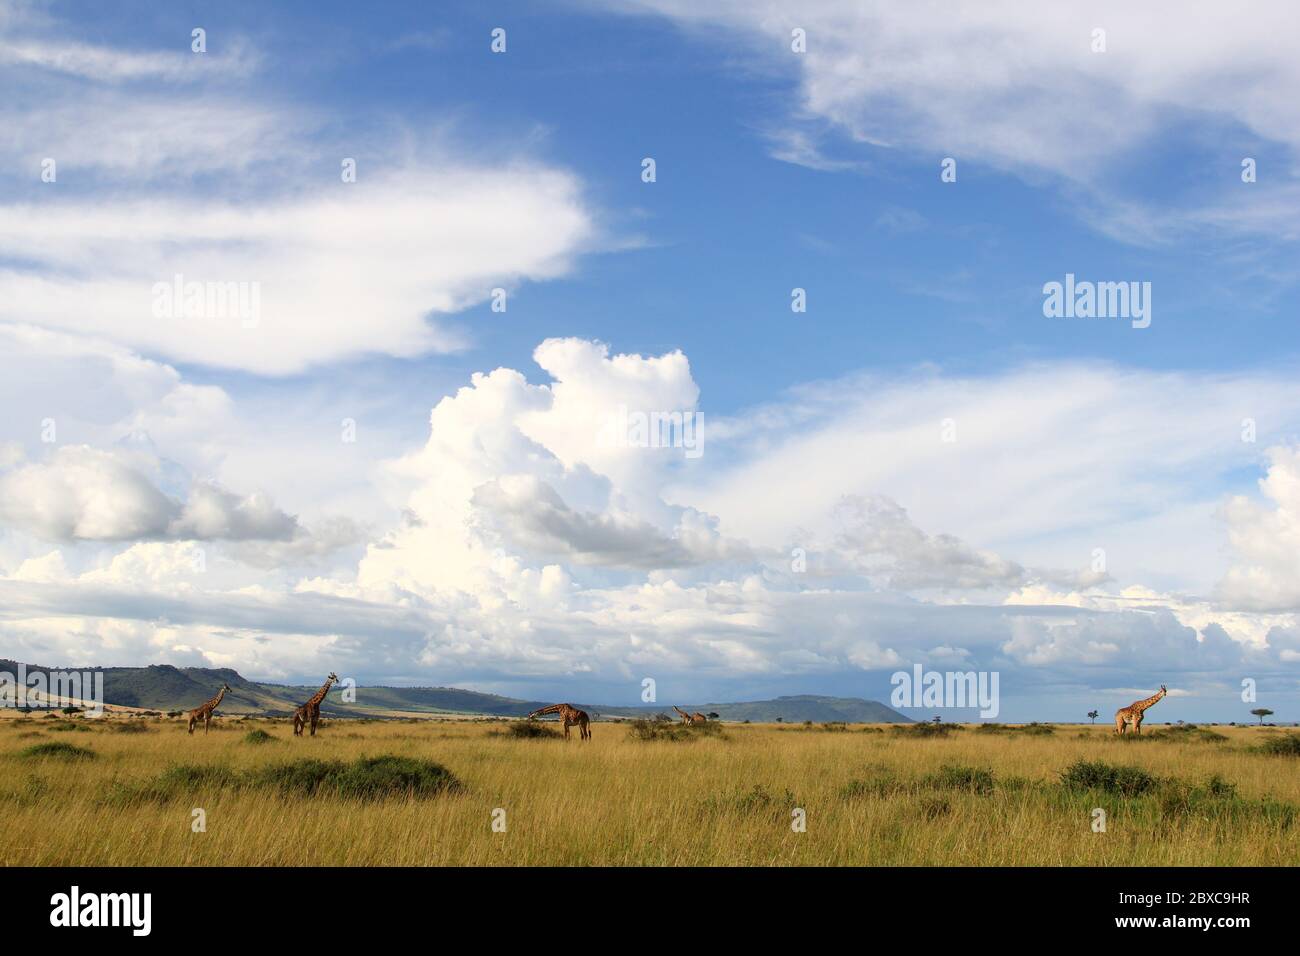 Vue panoramique sur la savane kenyane, les girafes se déplacent paisiblement dans les prairies sèches, en arrière-plan d'impressionnantes formations de nuages Banque D'Images